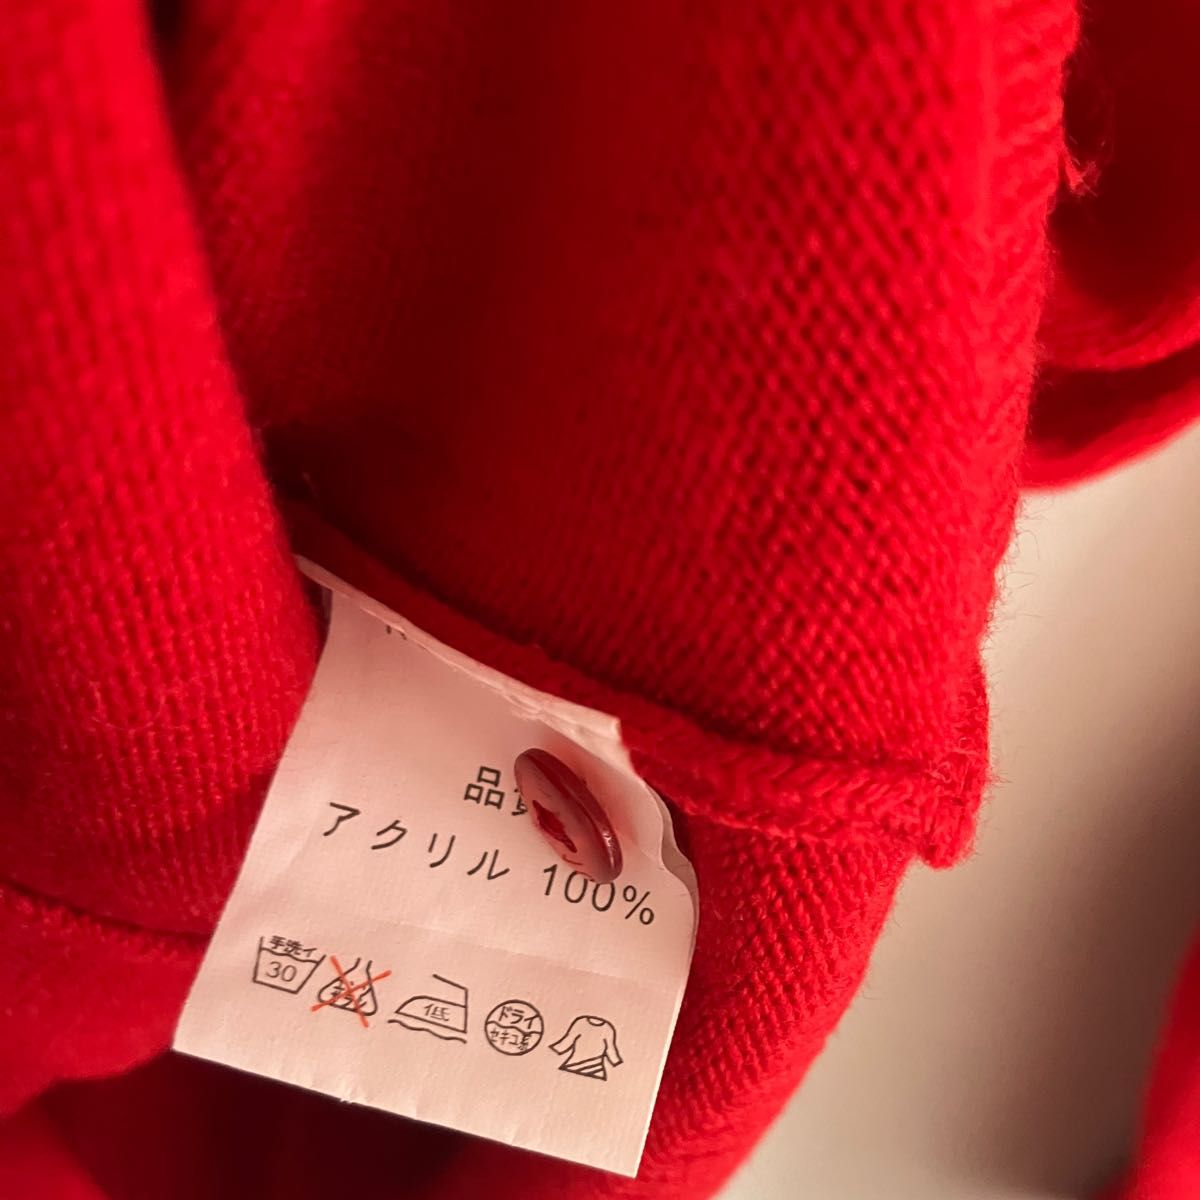 赤いまる襟カーディガンショート丈セーターまる襟レッドカラーアクリル100%可愛い流行り流行色オシャレ春インナー薄手セ ニット 長袖